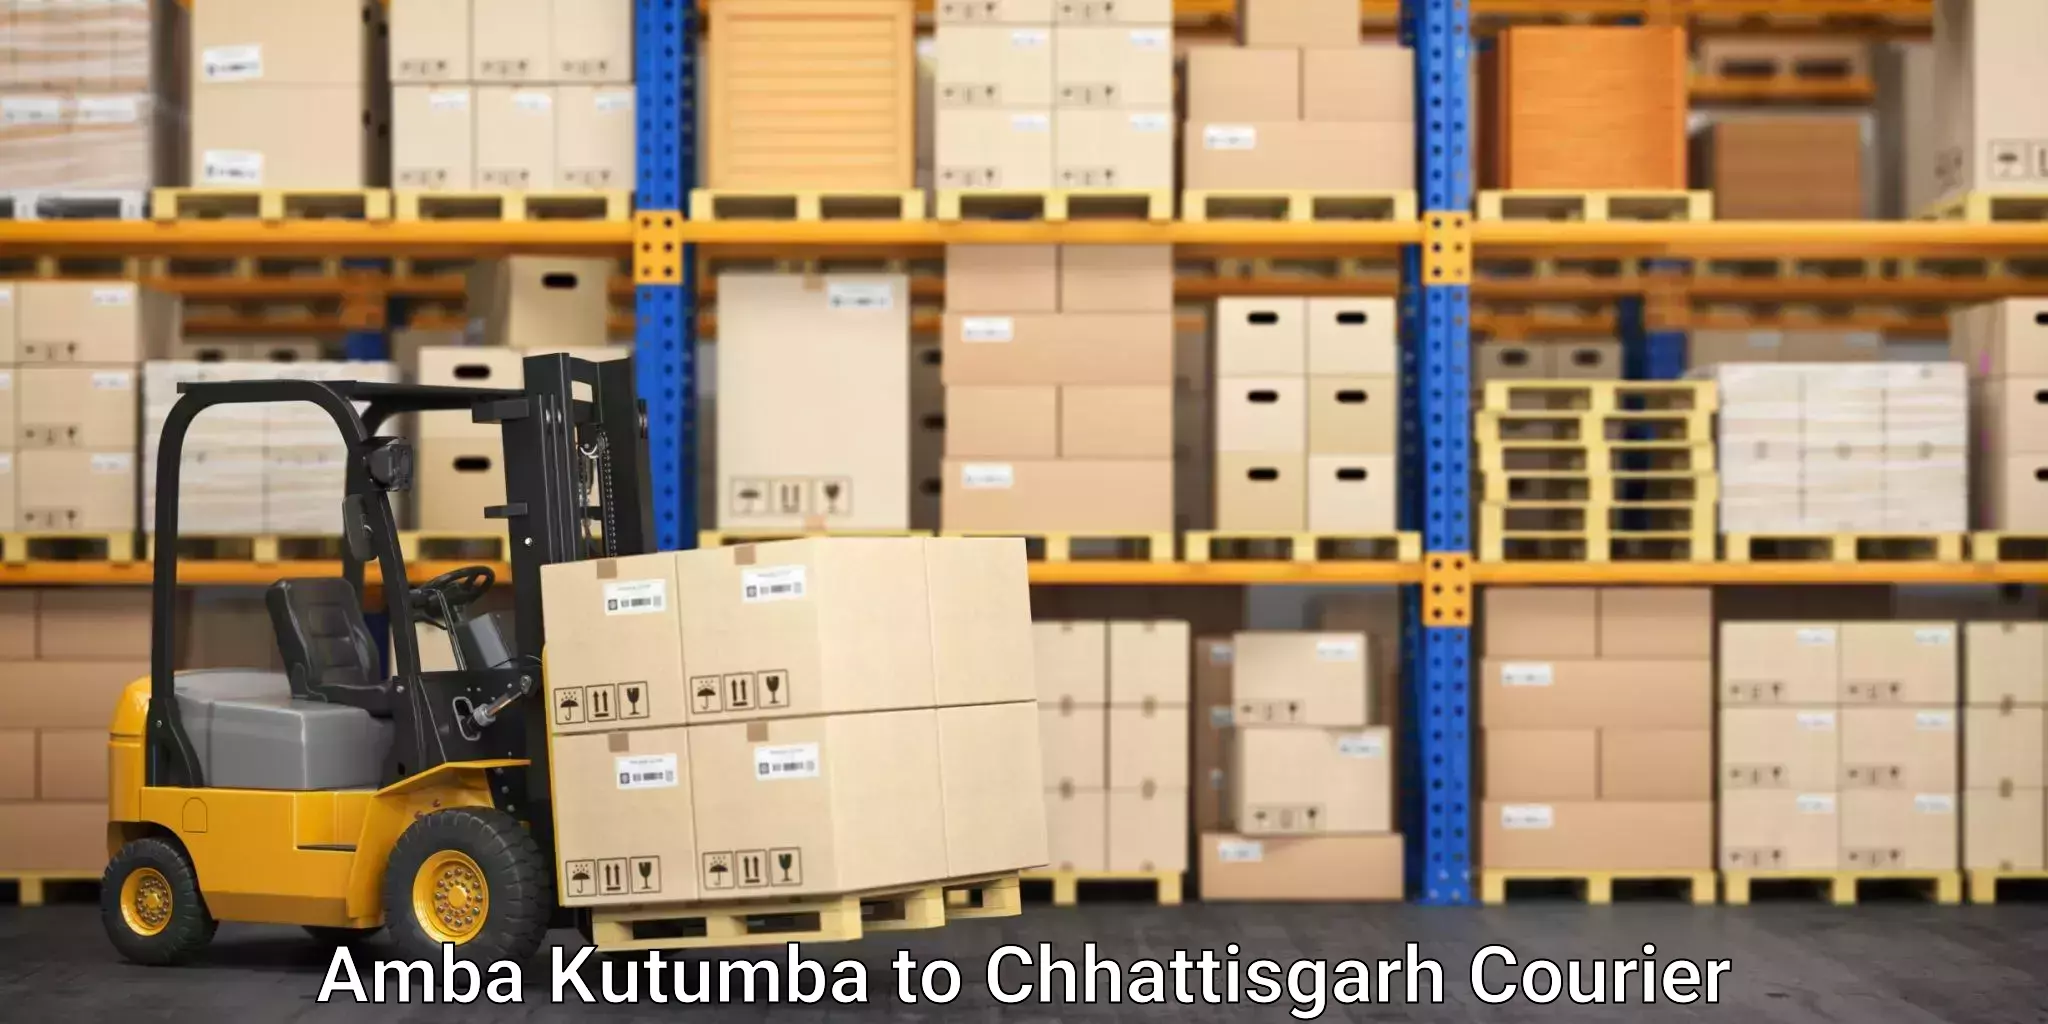 Professional relocation services Amba Kutumba to Patna Chhattisgarh